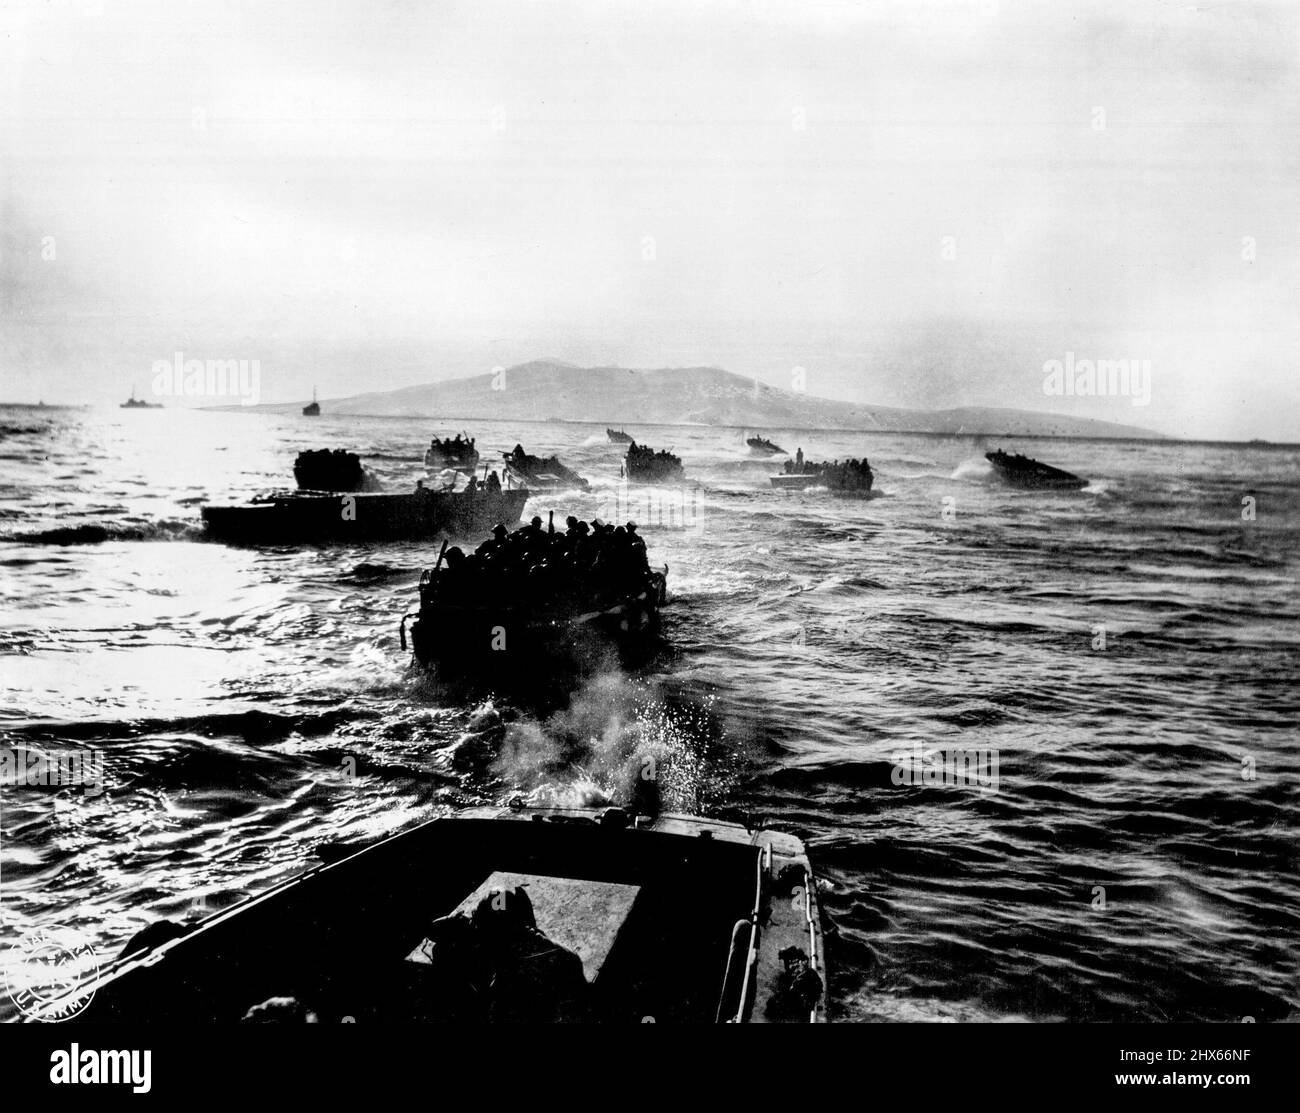 Mit Neuseeländern beladen, fahren Invasionsboote zum Ufer der Insel Vella Lavella, während leere Boote für mehr Männer zu den Transporten zurückkehren. 28. Oktober 1947. (Foto: US Army Signal Corps Photo). Stockfoto